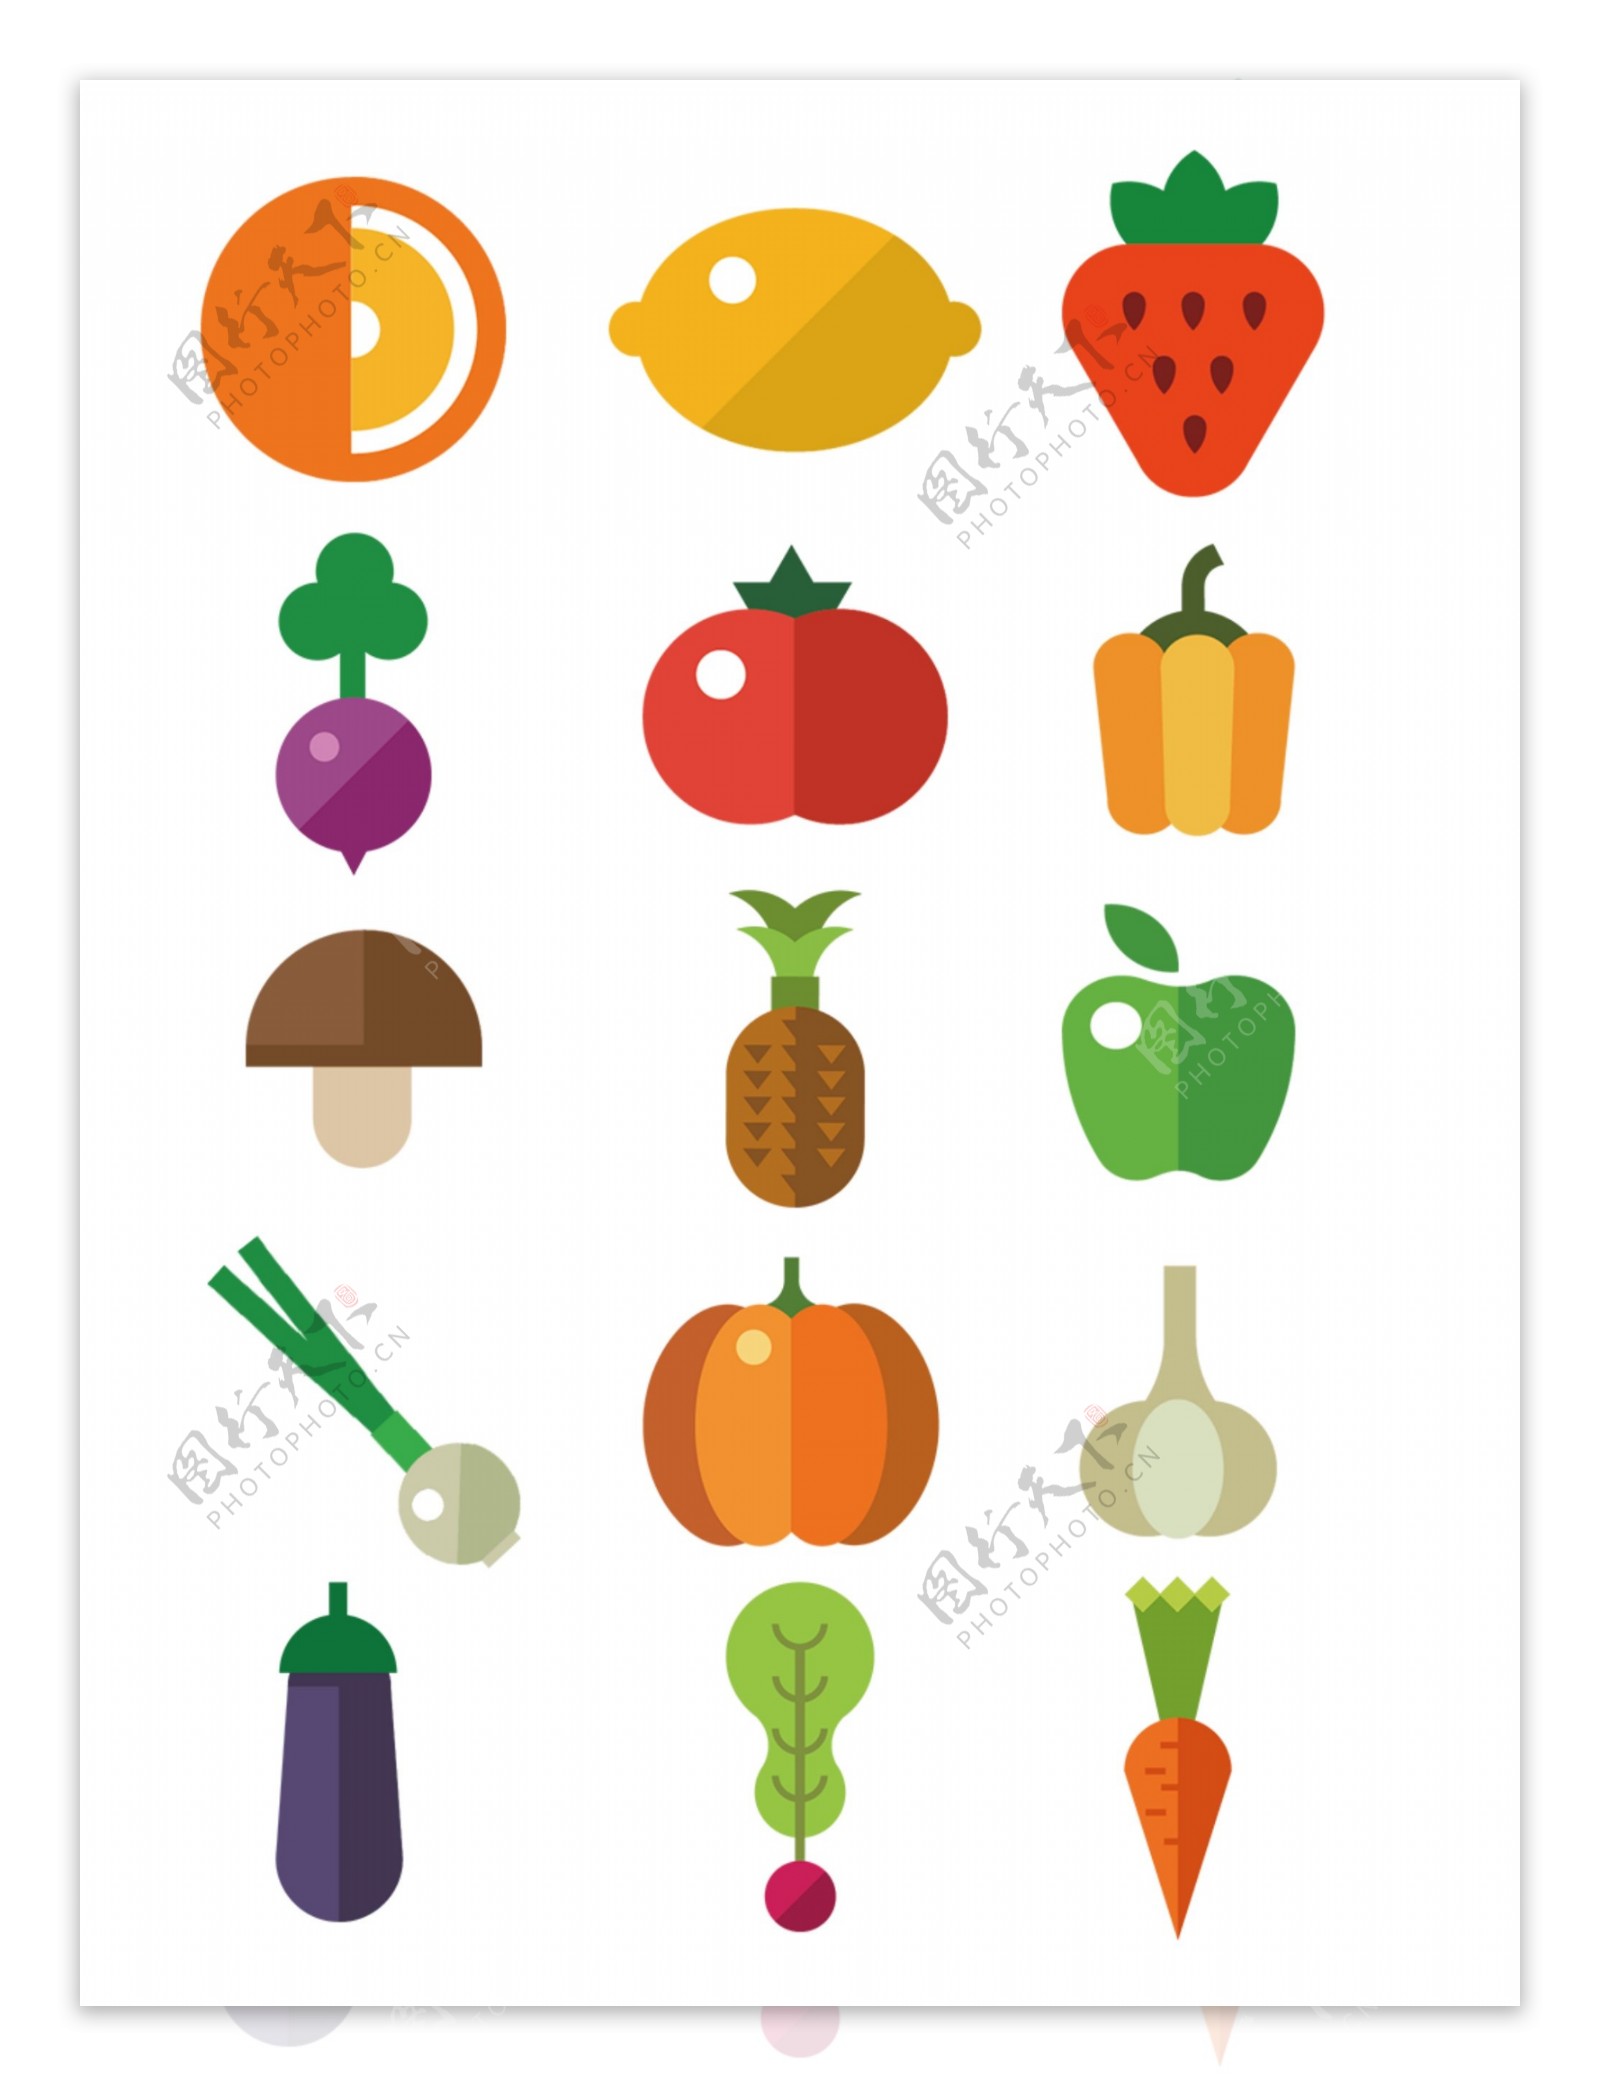 扁平化手绘蔬菜水果素材